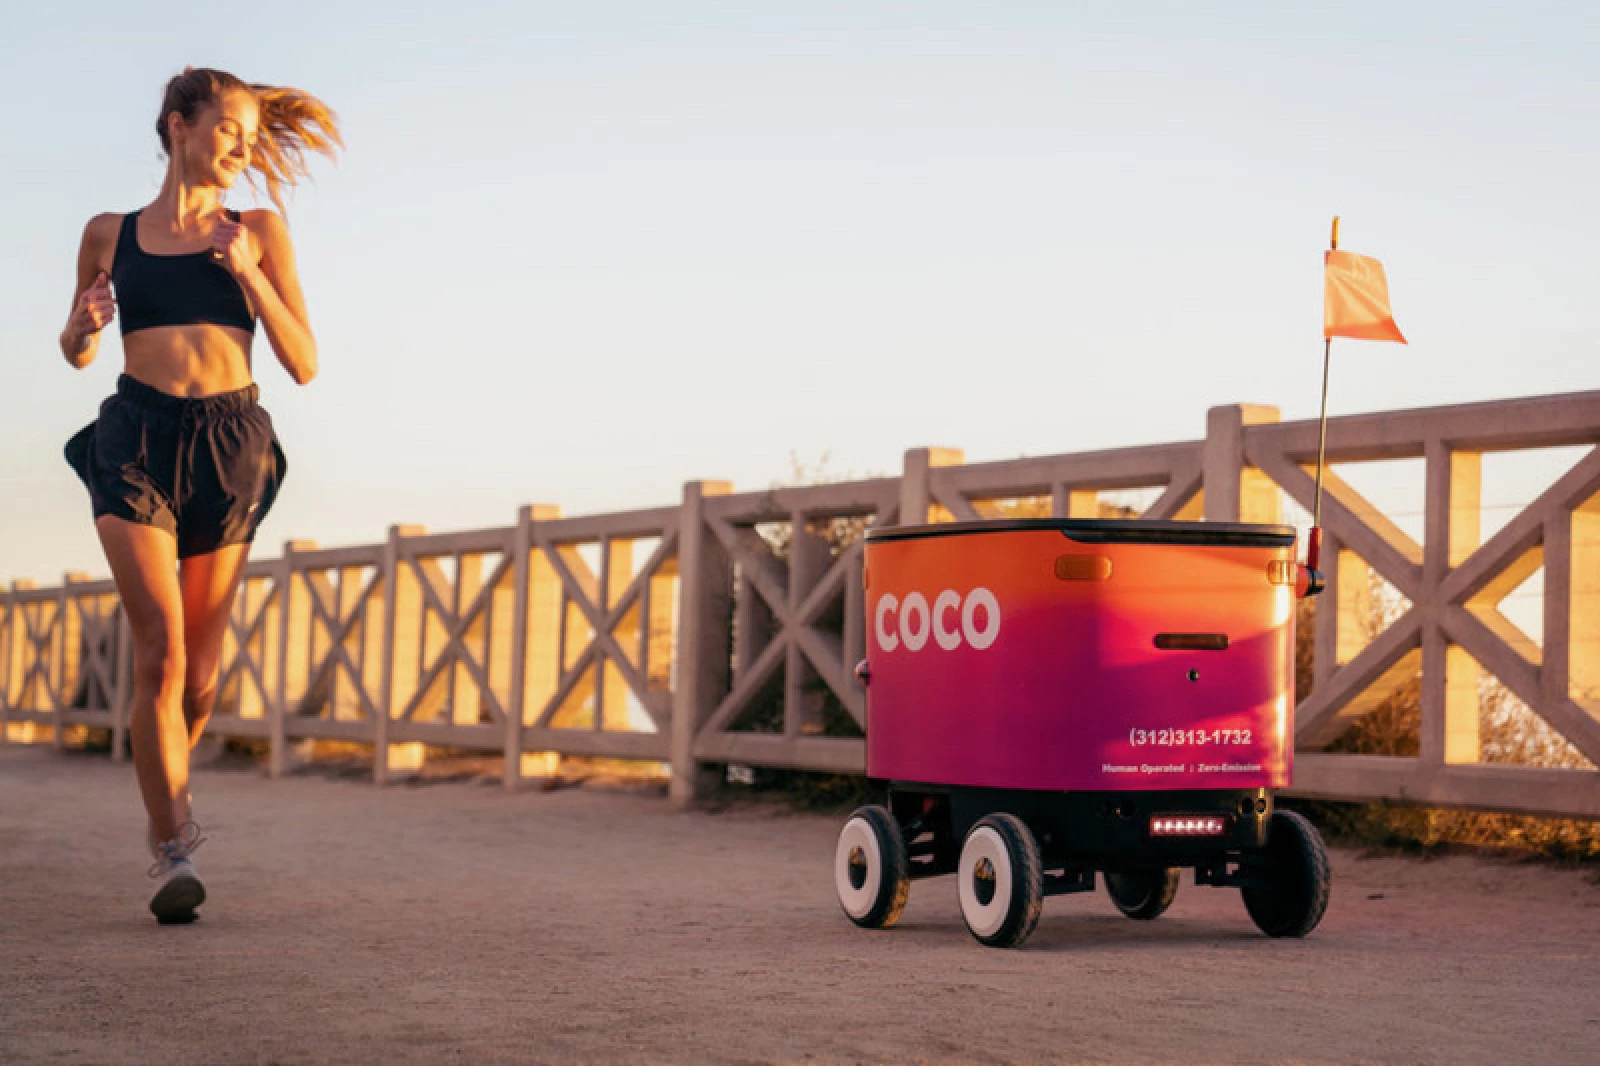 Đây là Coco 1 - Robot giao hàng điều khiển từ xa siêu kute đang vận hành ở Los Angeles, Mỹ